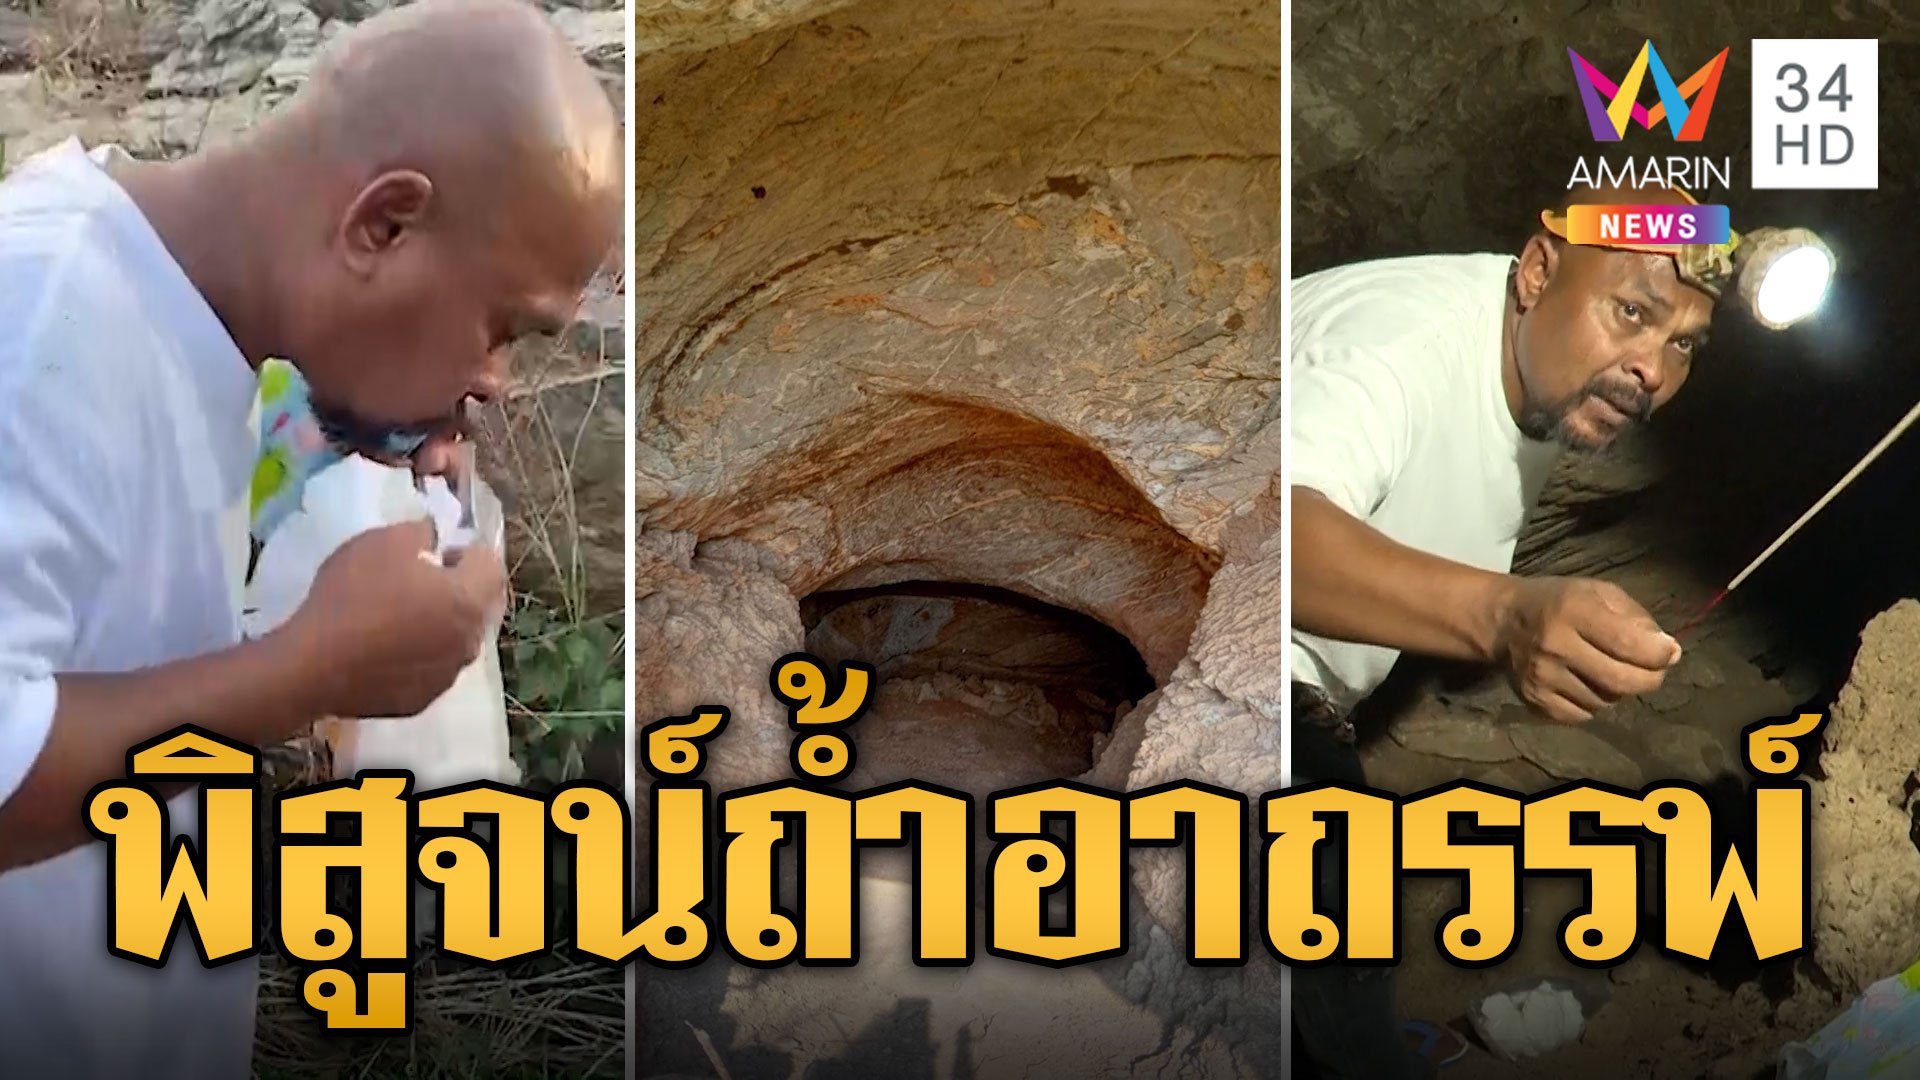 หมอปลา บุกพิสูจน์ถ้ำอาถรรพ์ คนขุดสมบัติตายภายใน 3 วัน | ข่าวอรุณอมรินทร์ | 30 มี.ค. 67 | AMARIN TVHD34